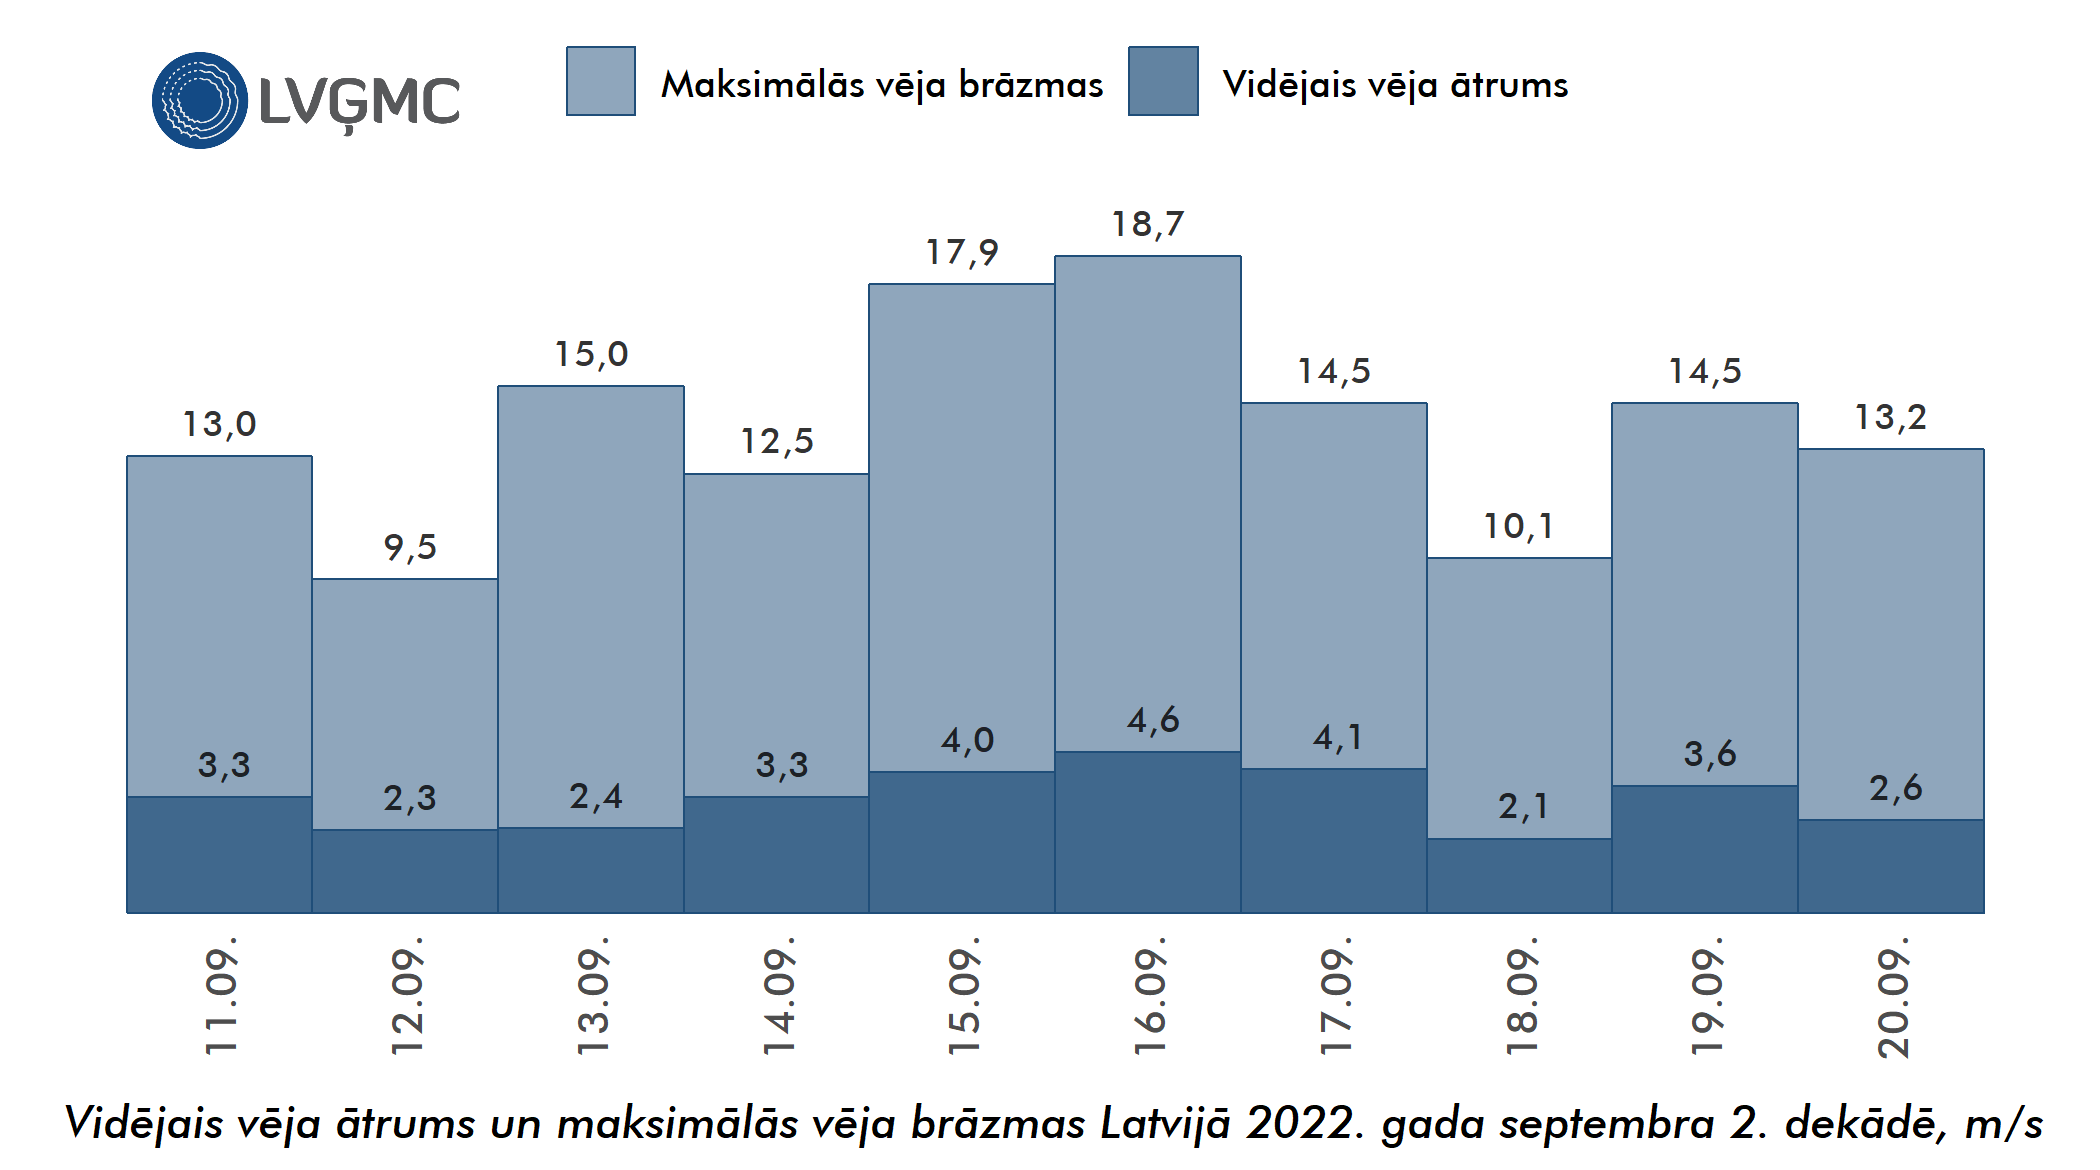 Vidējais un maksimālais vēja ātrums Lavijā 2022. gada septembra 2. dekādē, m/s